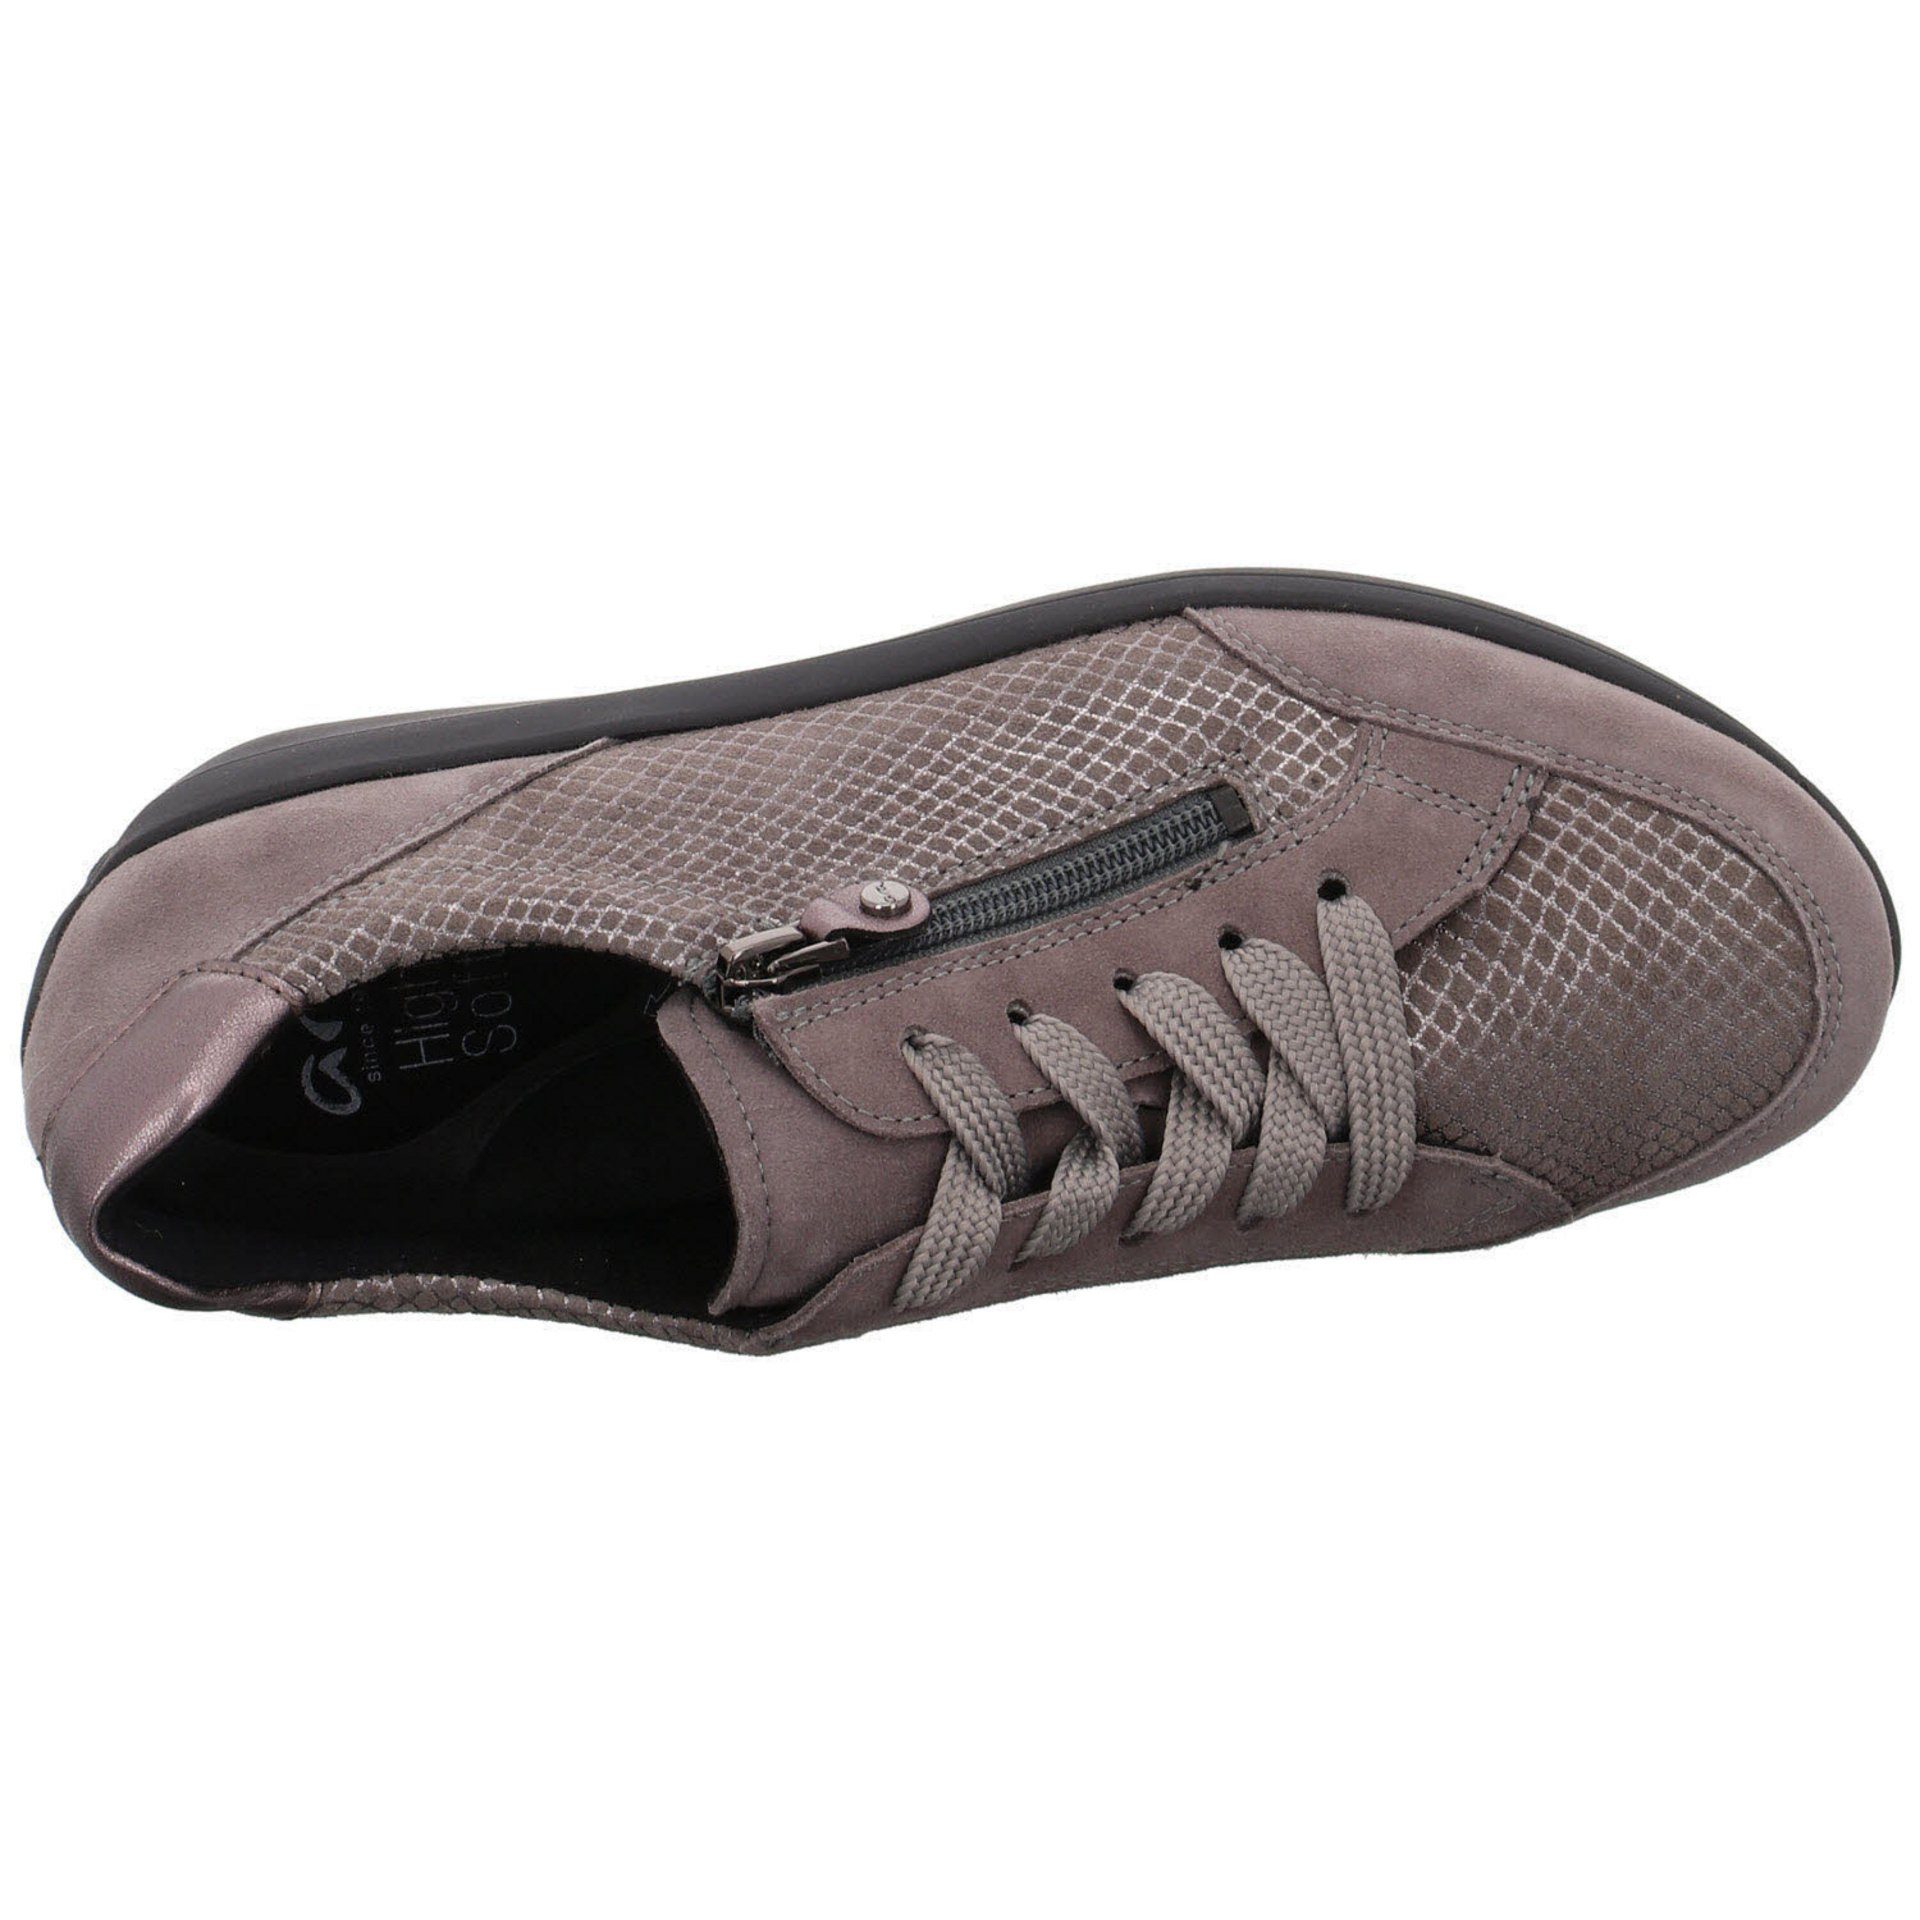 Schnürschuh Ara Damen Merano Sneaker Sneaker Lederkombination Schuhe 040337 grau